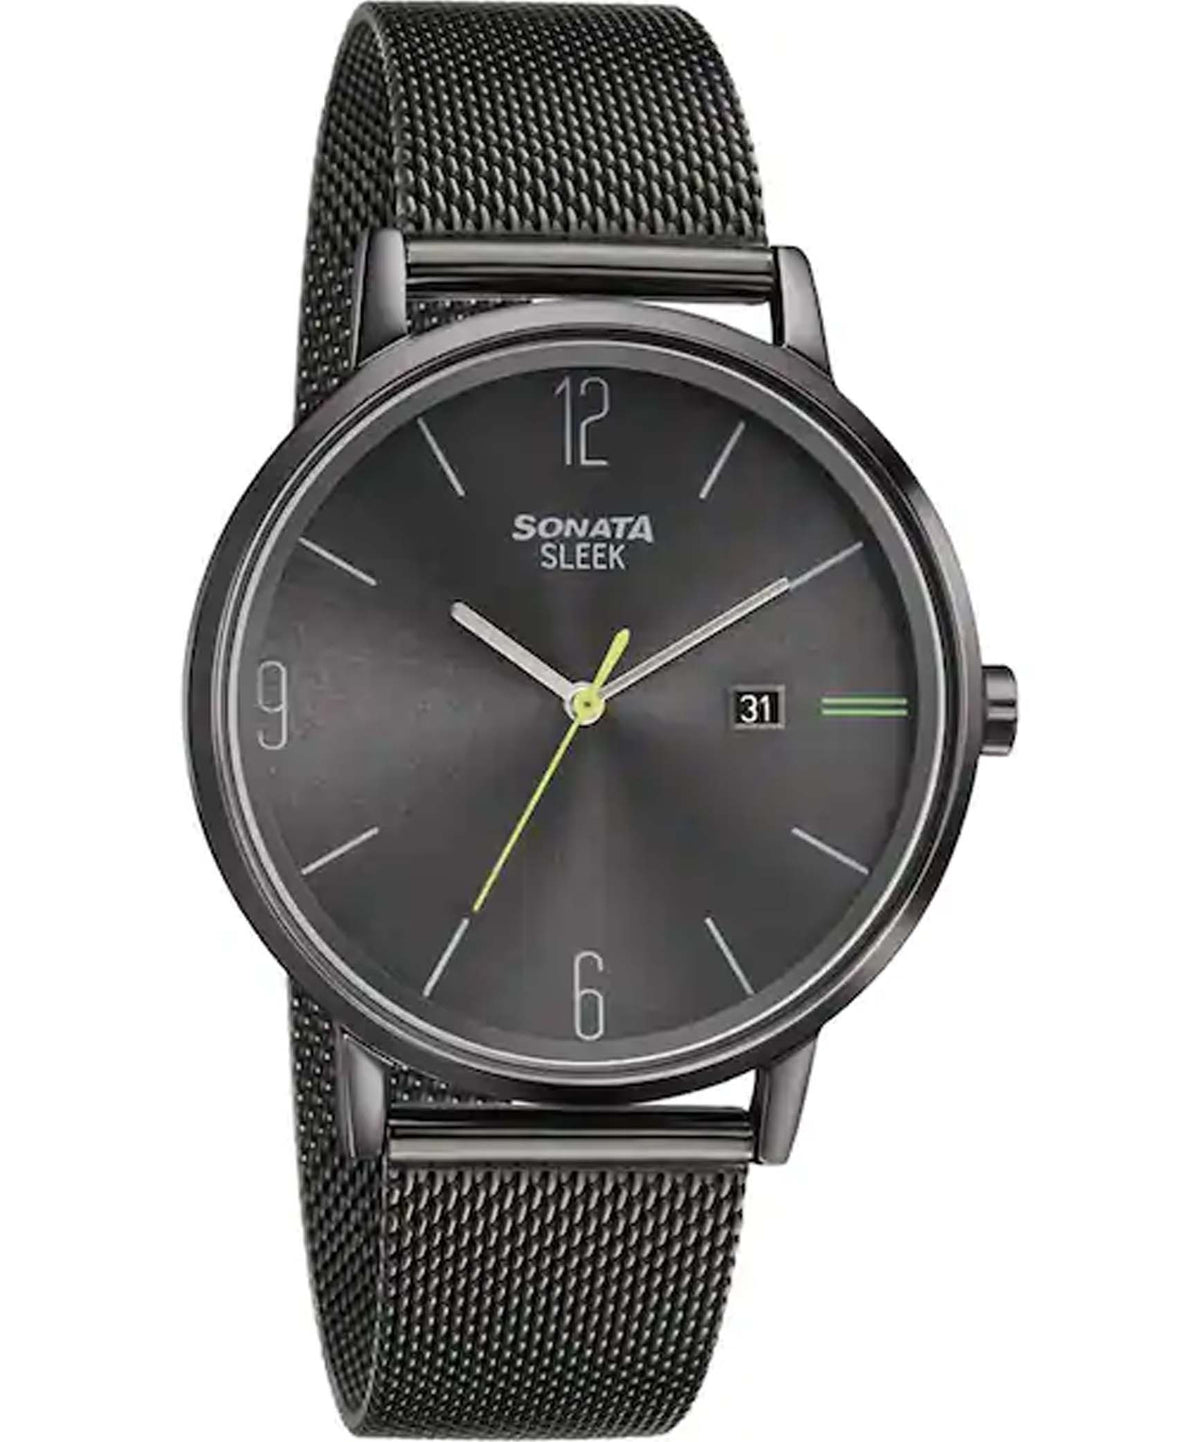 Sonata Men's Sleek Grey Dial Black Stainless Steel Watch, 7131NM01